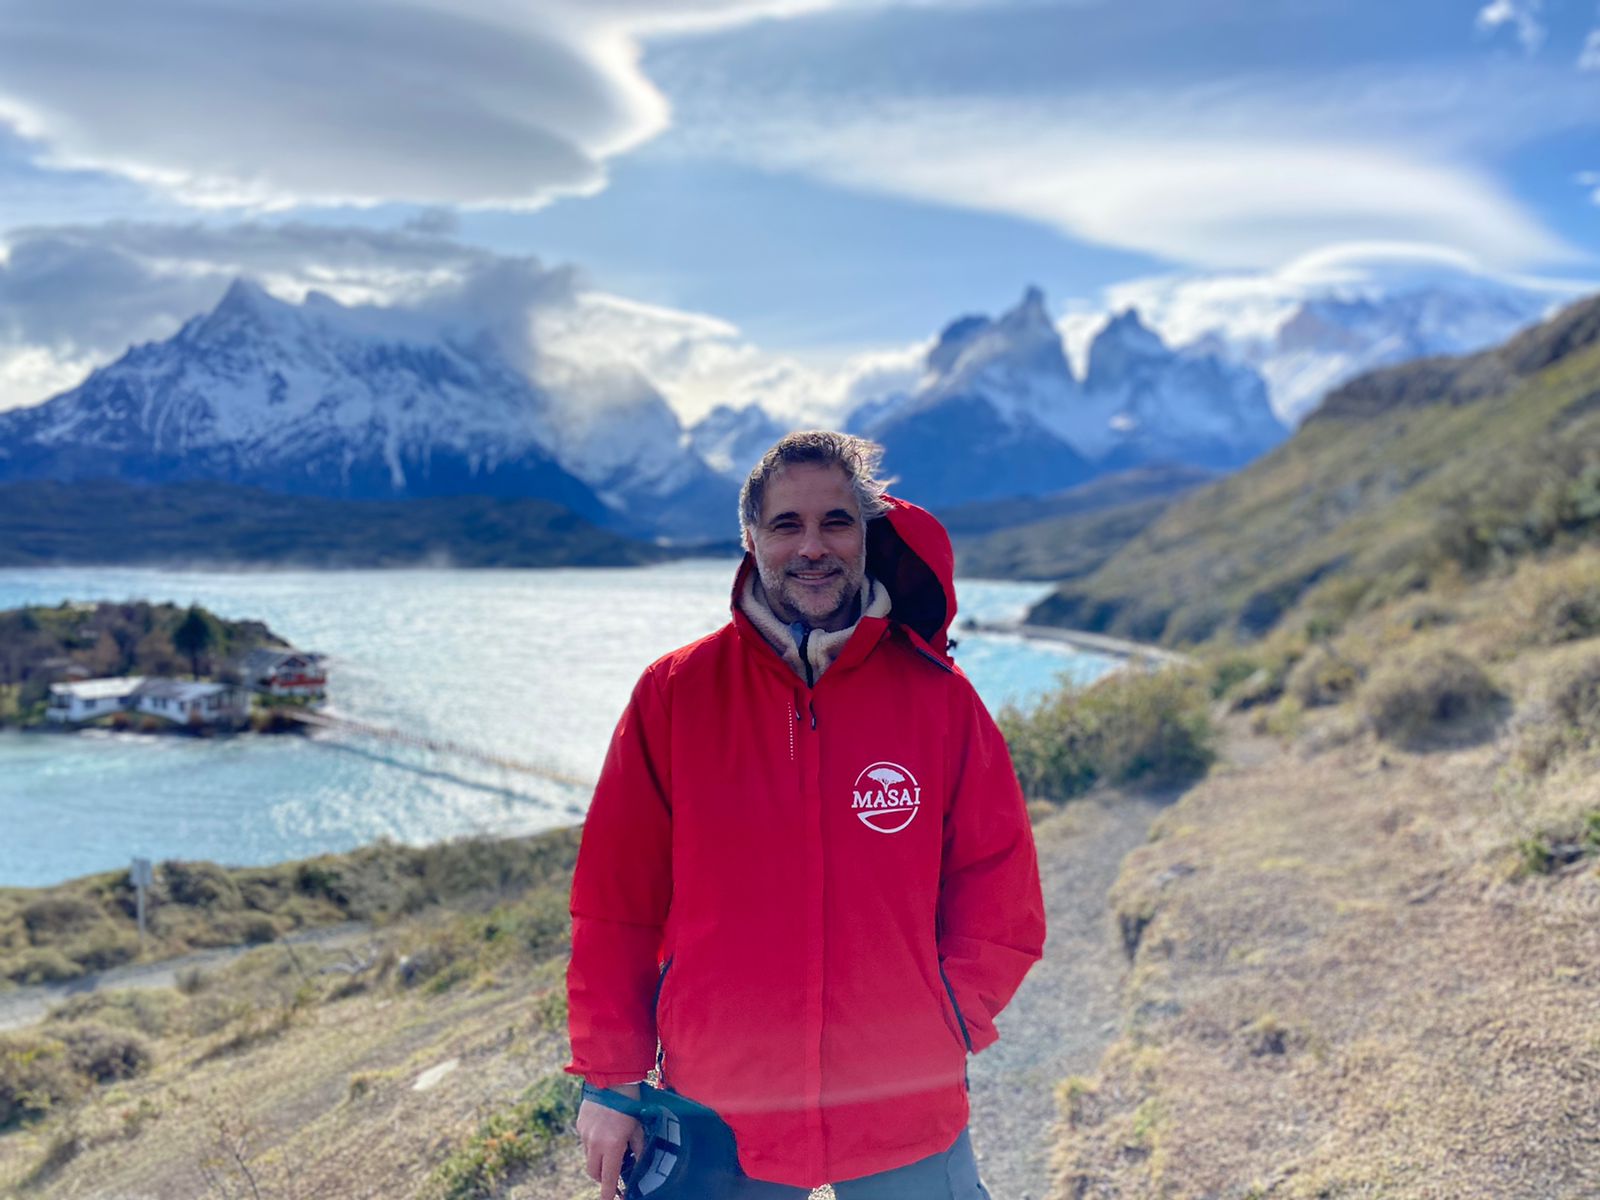 Patagonia Paulo Brunetti cumplió su sueño de regresar después de 35 años a la tierra que lo vio nacer